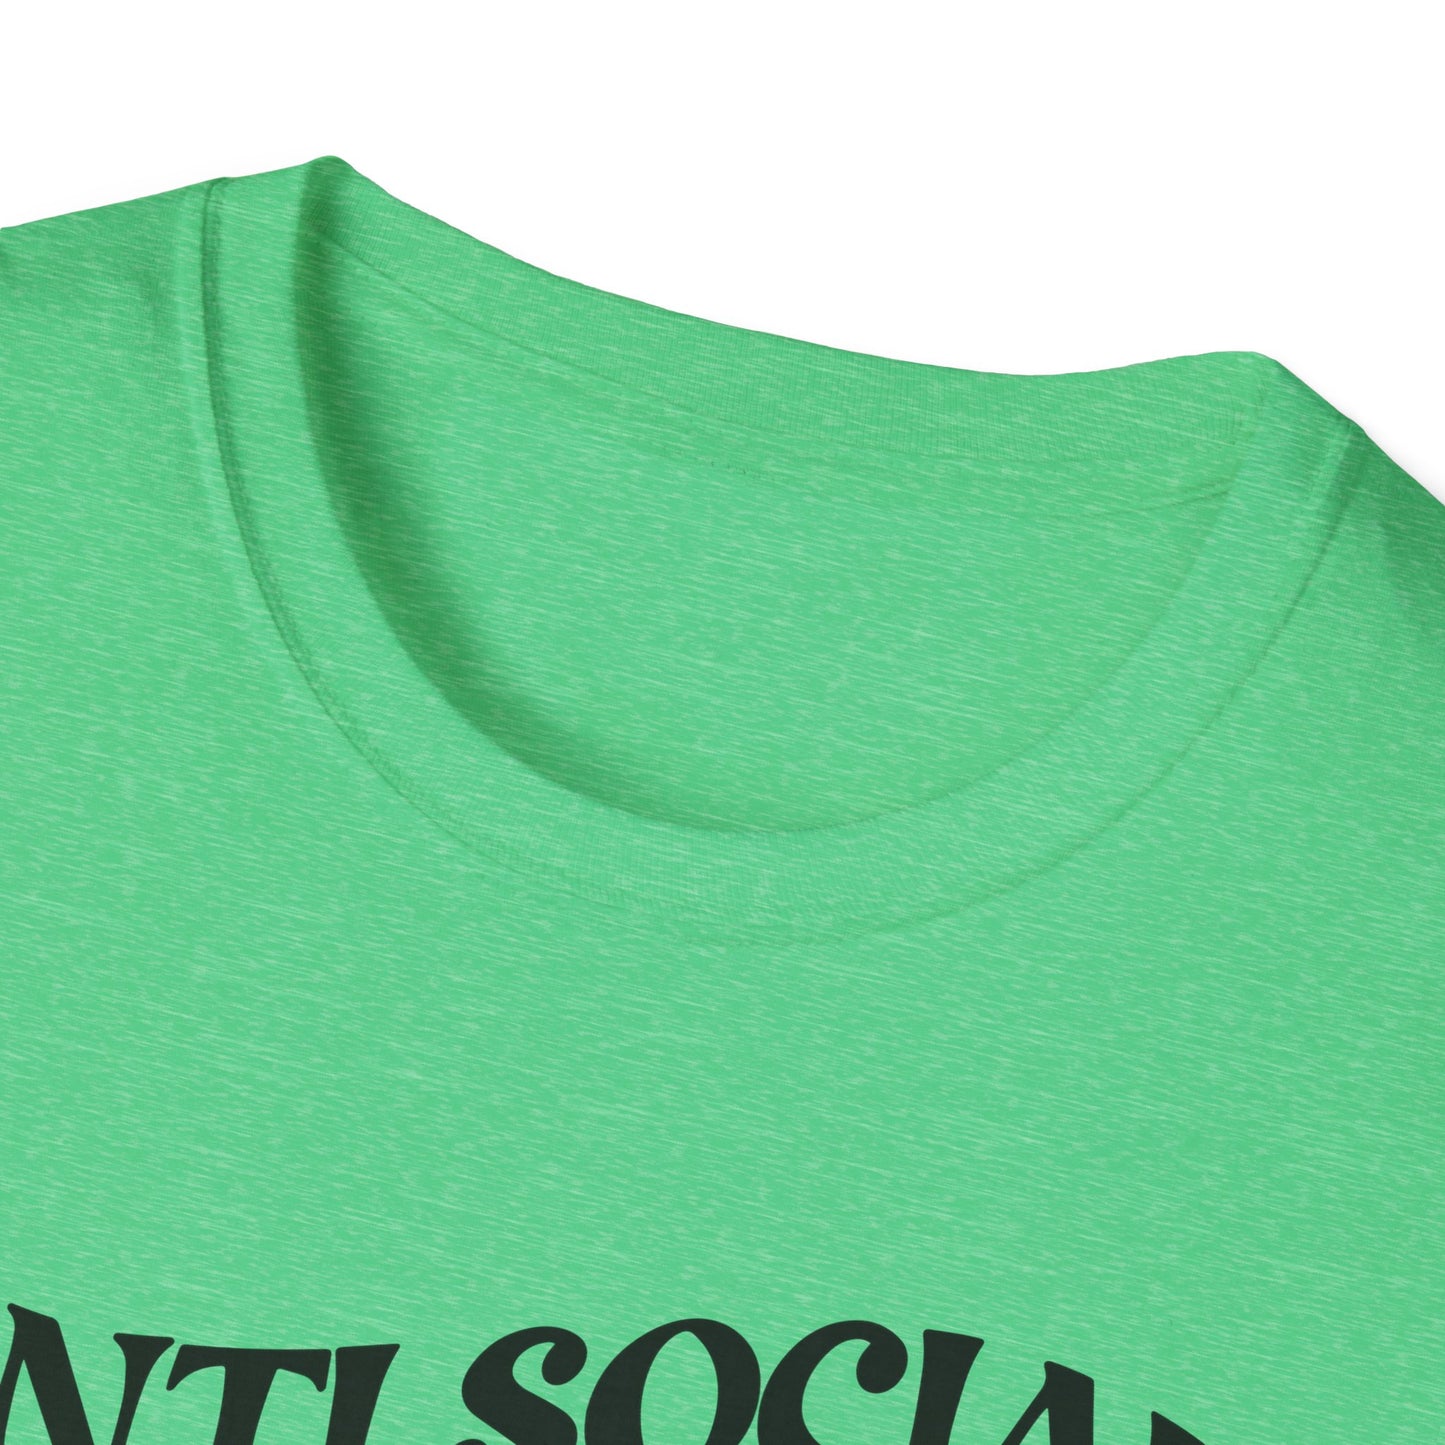 ANTISOCIAL DOG MOM - Unisex Softstyle T-Shirt